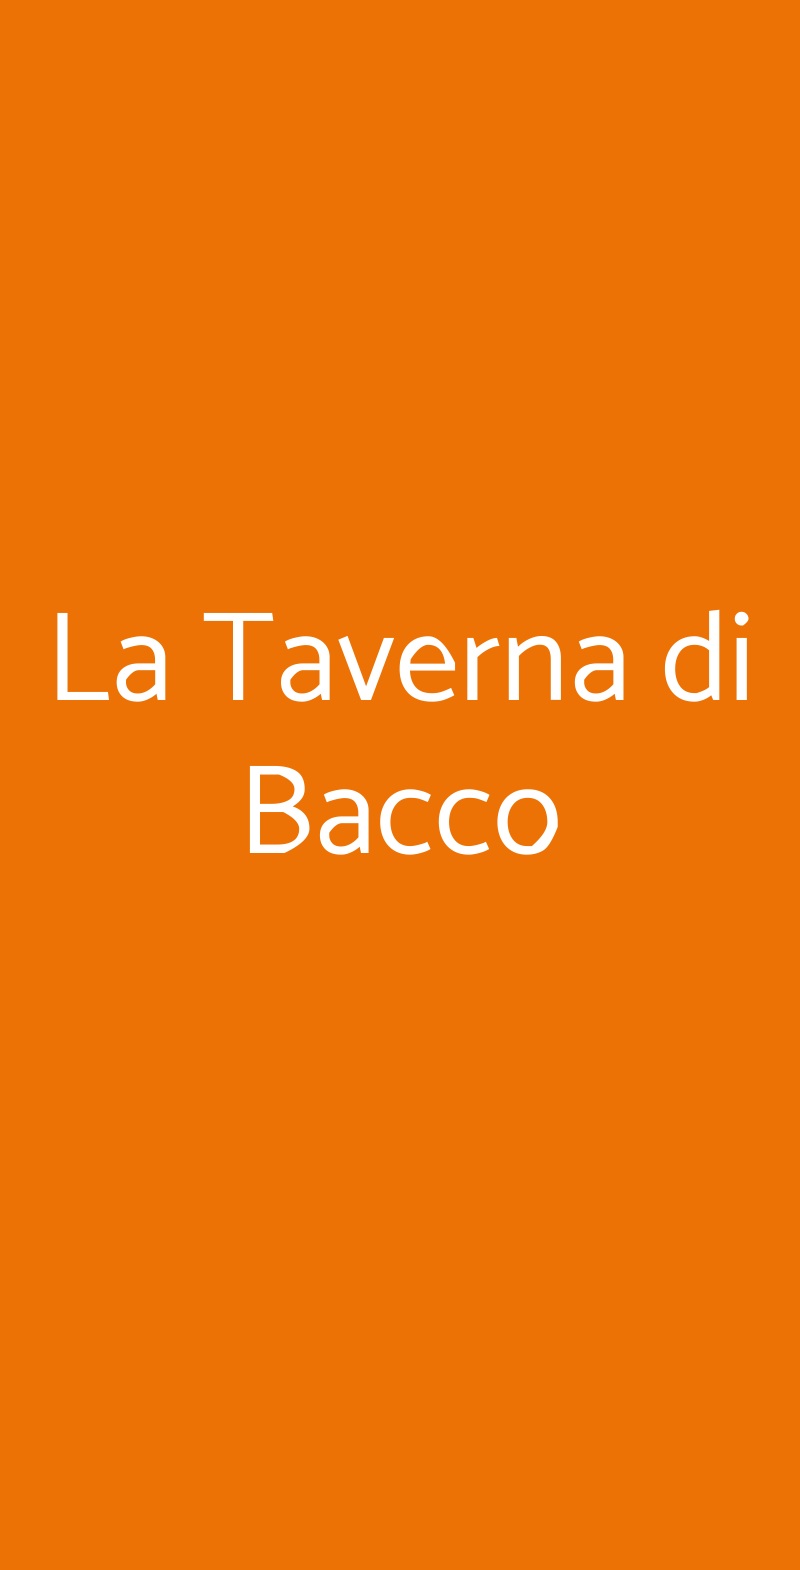 La Taverna di Bacco Napoli menù 1 pagina